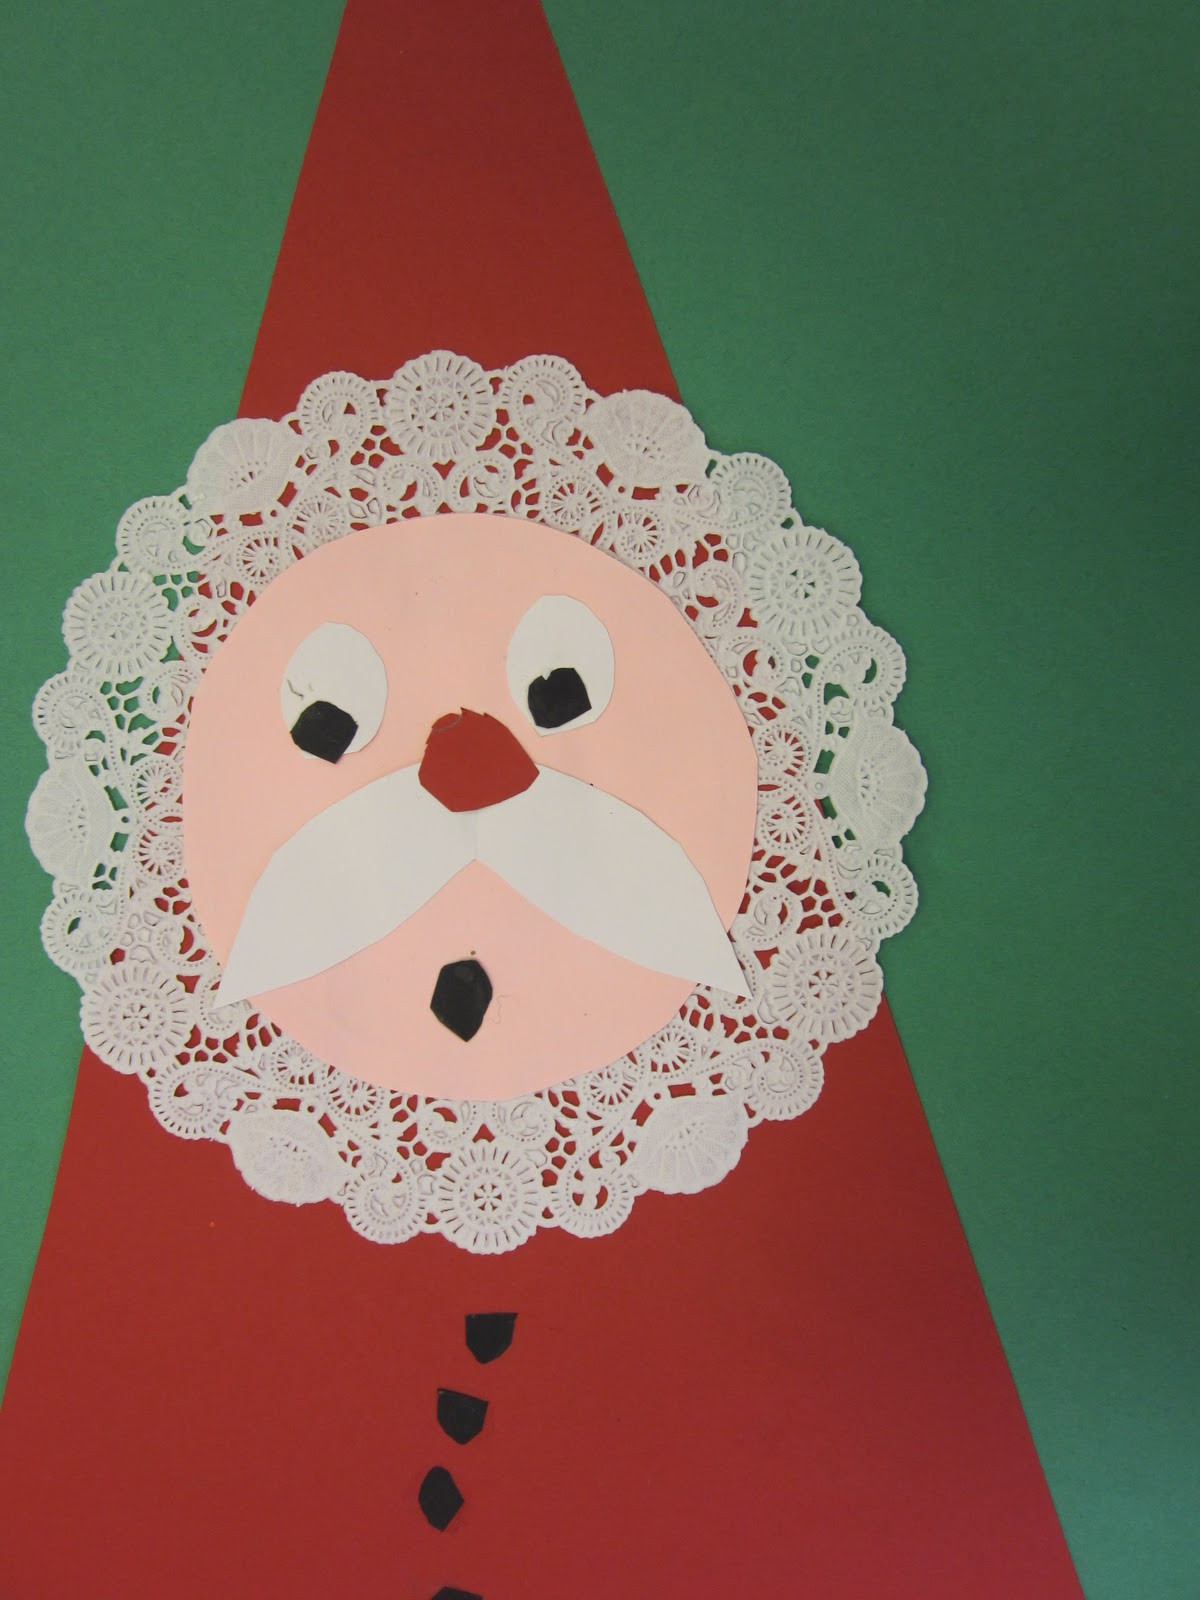 Christmas Art Ideas For Teachers
 The Art Teacher s Closet In the Art Room Geometric Santas